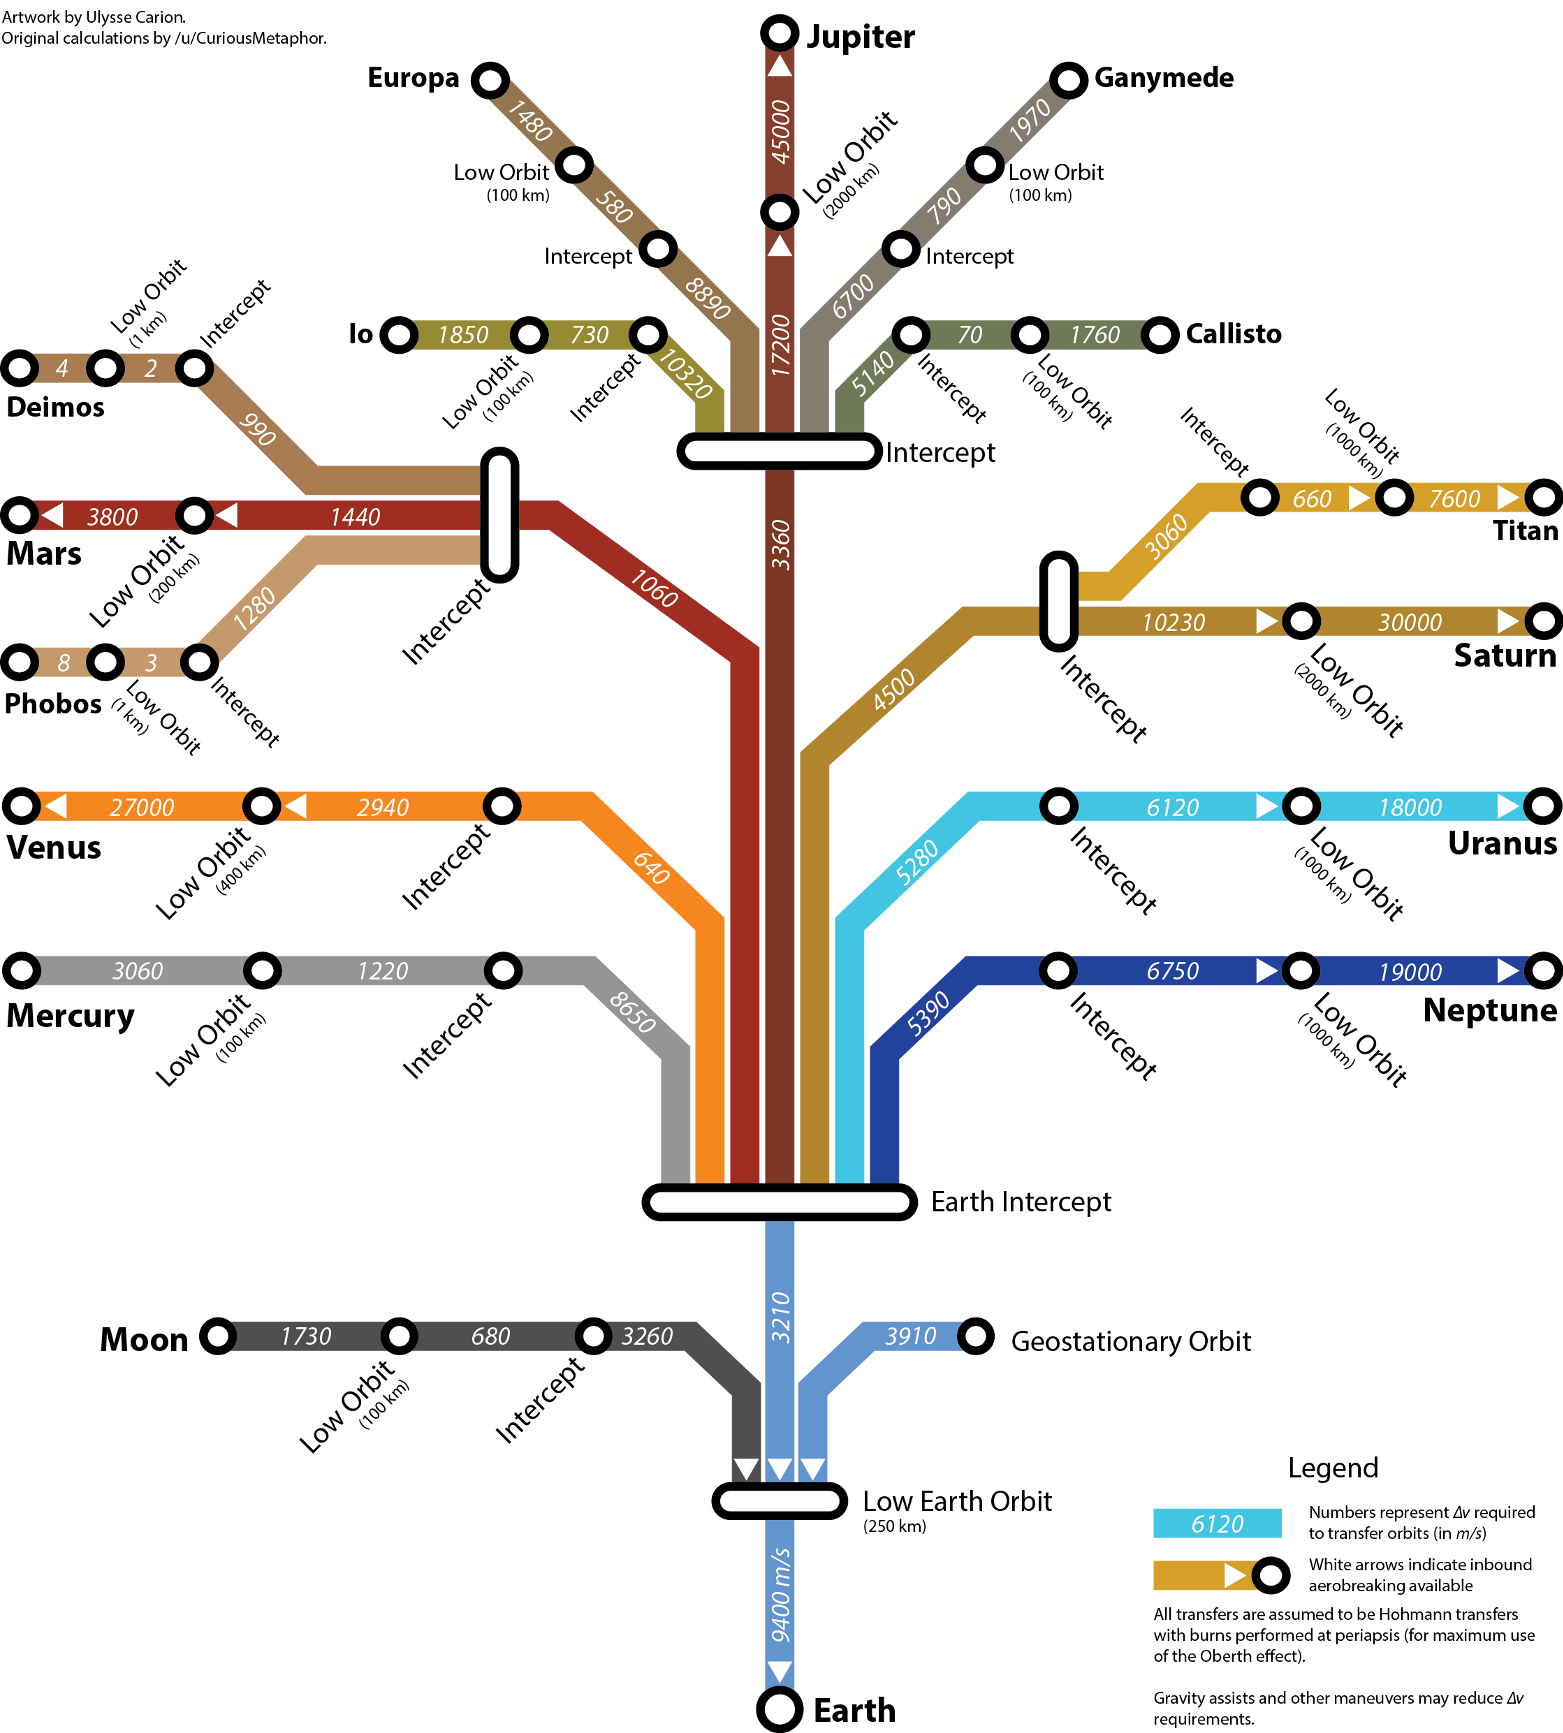 Vergrösserte Ansicht: Das Sonnensystem - U-Bahn Streckenplan&nbsp; ( CC BY-SA 3.0 by U. Carion via StackExchange)